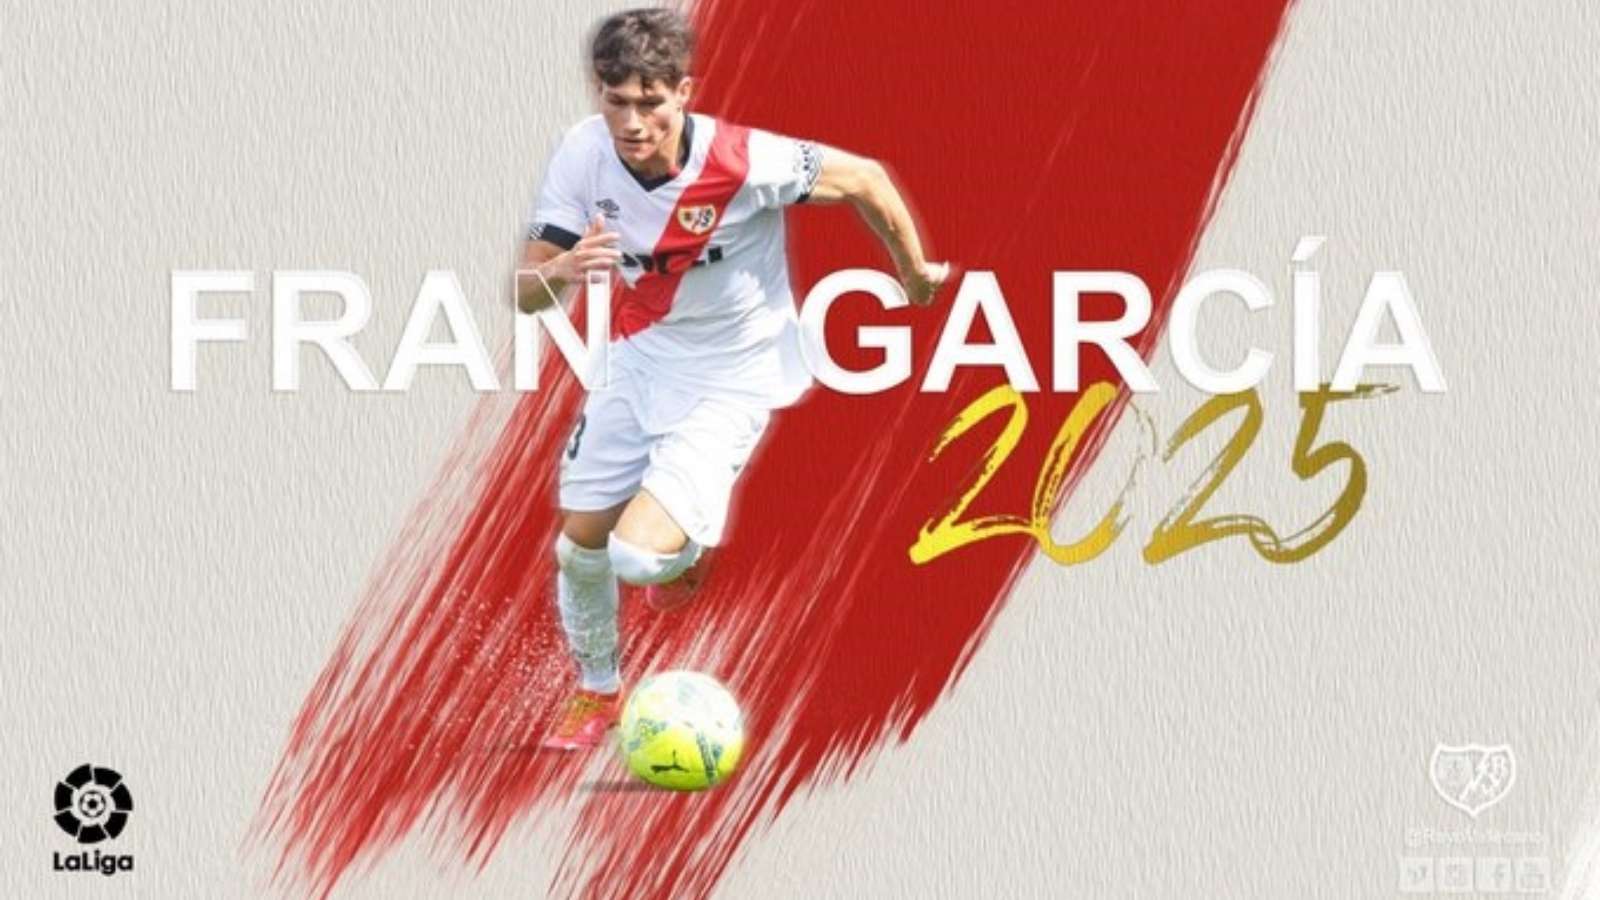 Fran Garcia